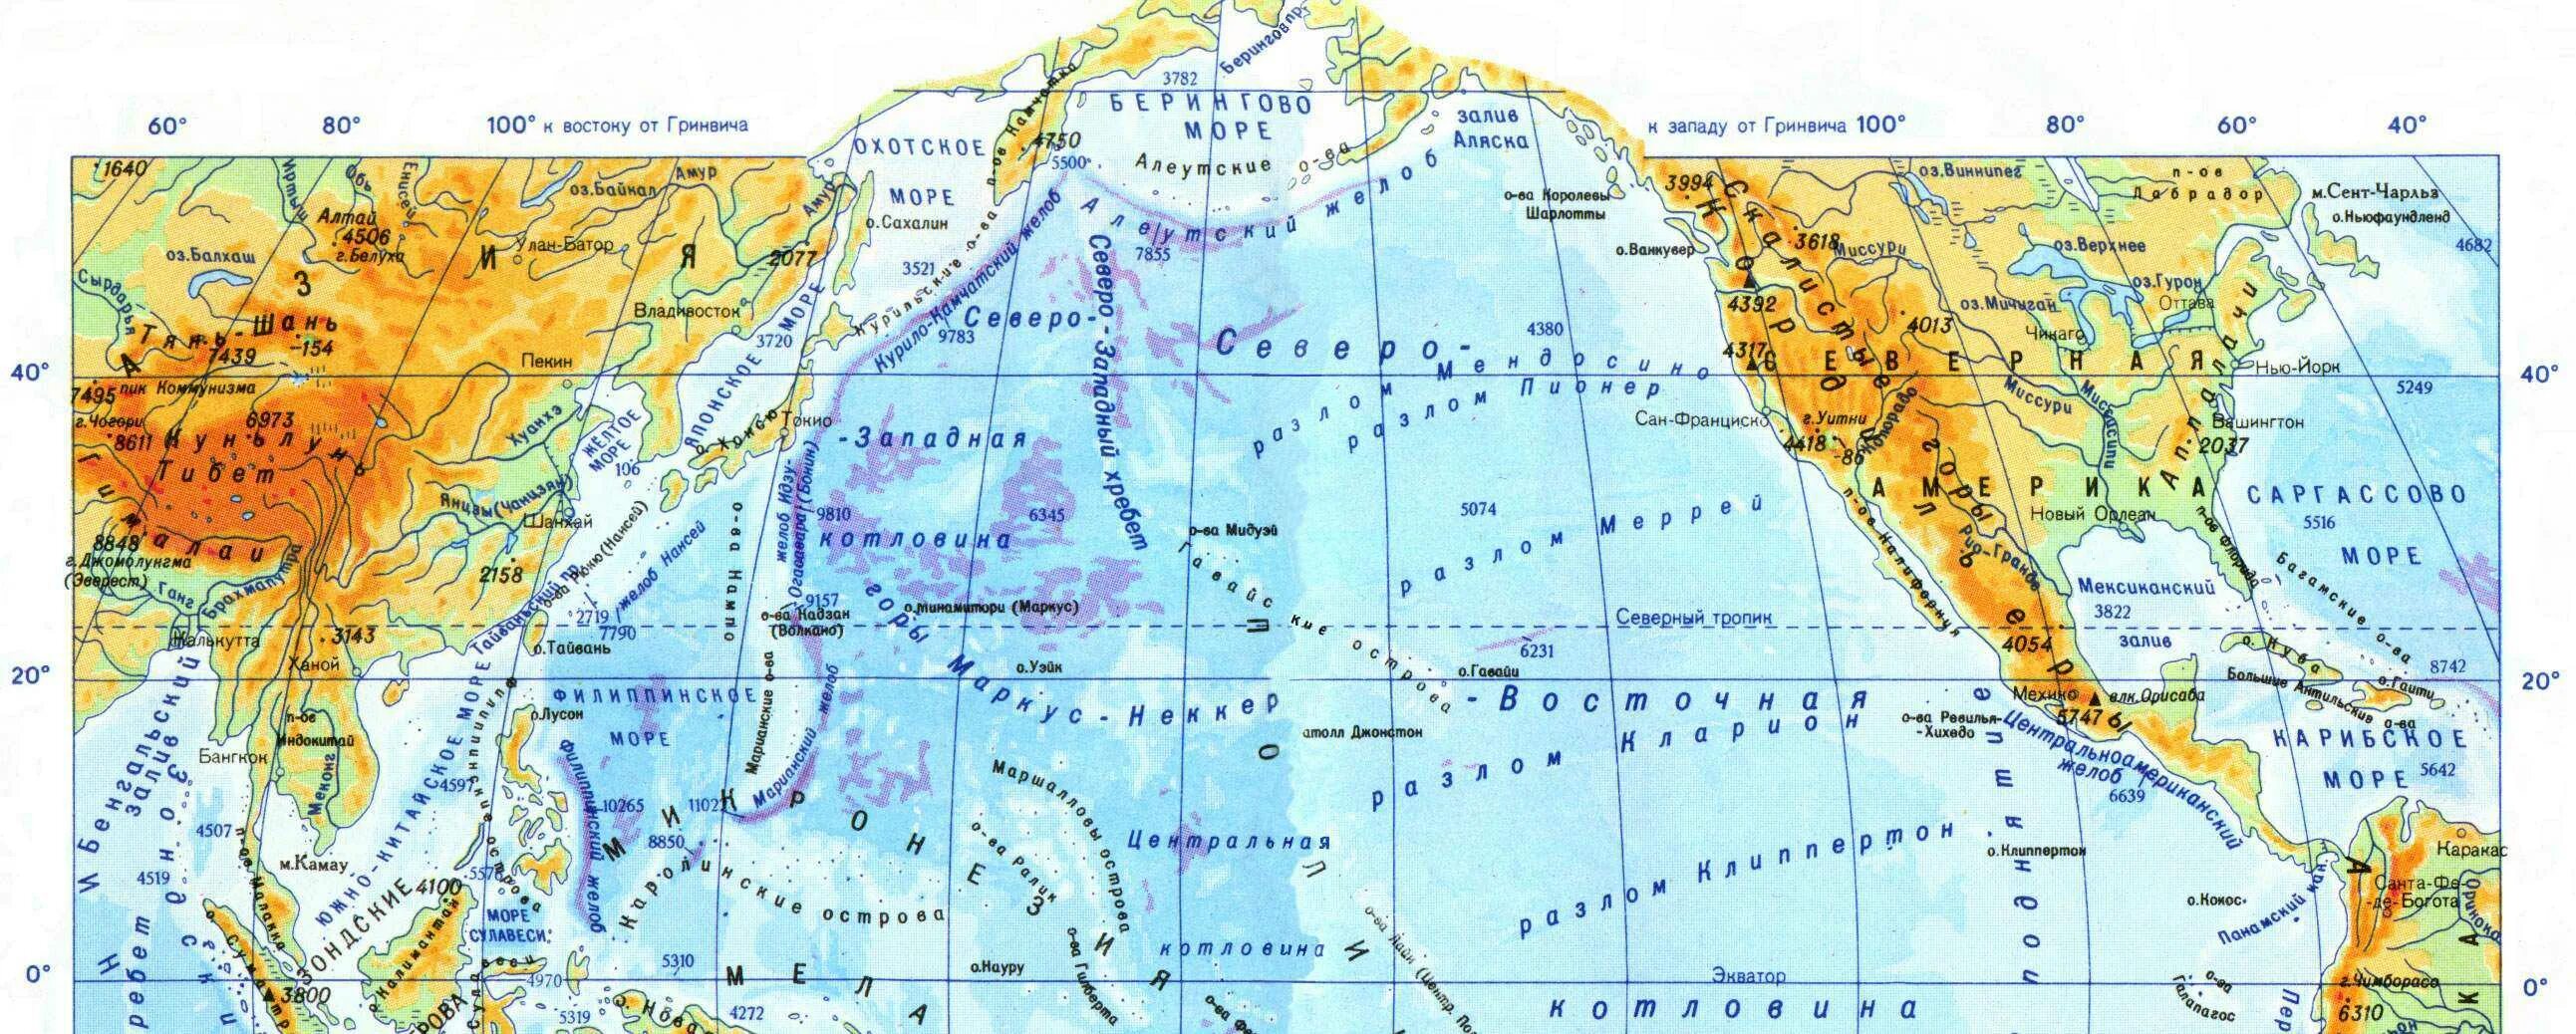 Океаны у берегов евразии. Карта Азии с морями проливами и заливами. Заливы проливы моря моря Евразии. Моря заливы проливы зарубежной Азии. Моря океаны заливы проливы Евразии.